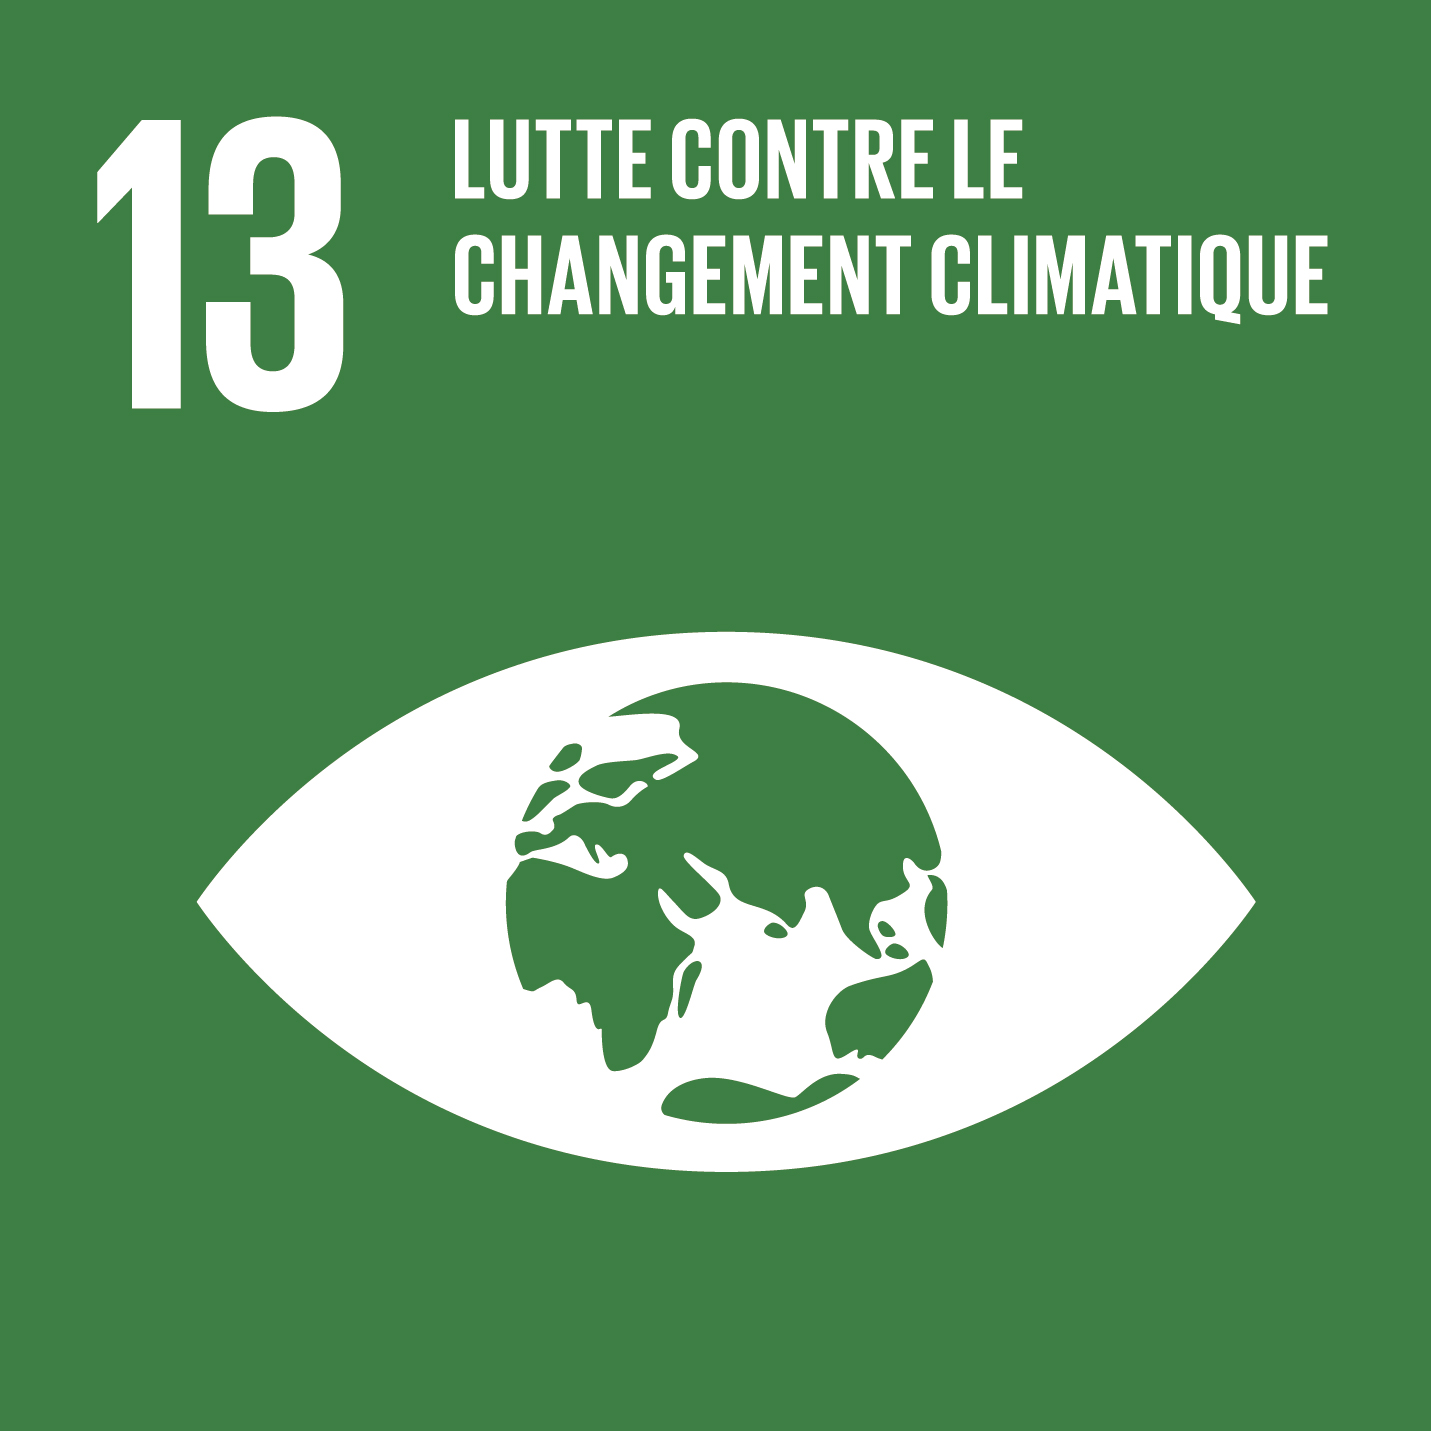 Visuel objectif de développement durable 13 Lutte contre le changement climatique